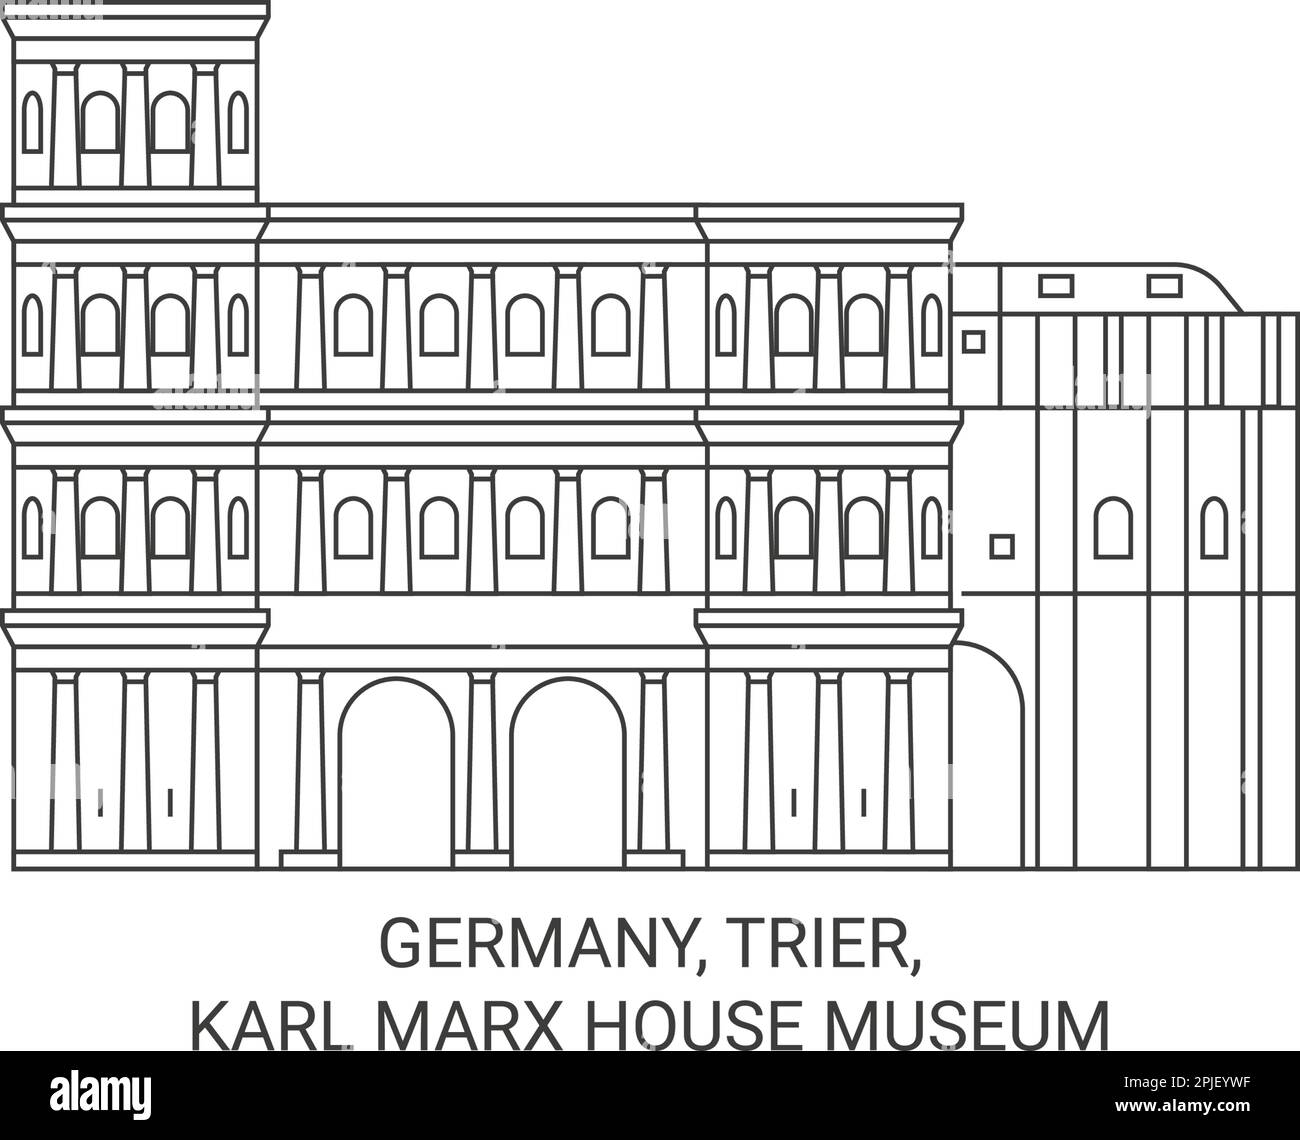 Germany, Trier, Karl Marx House Museum travel landmark vector illustration Stock Vector